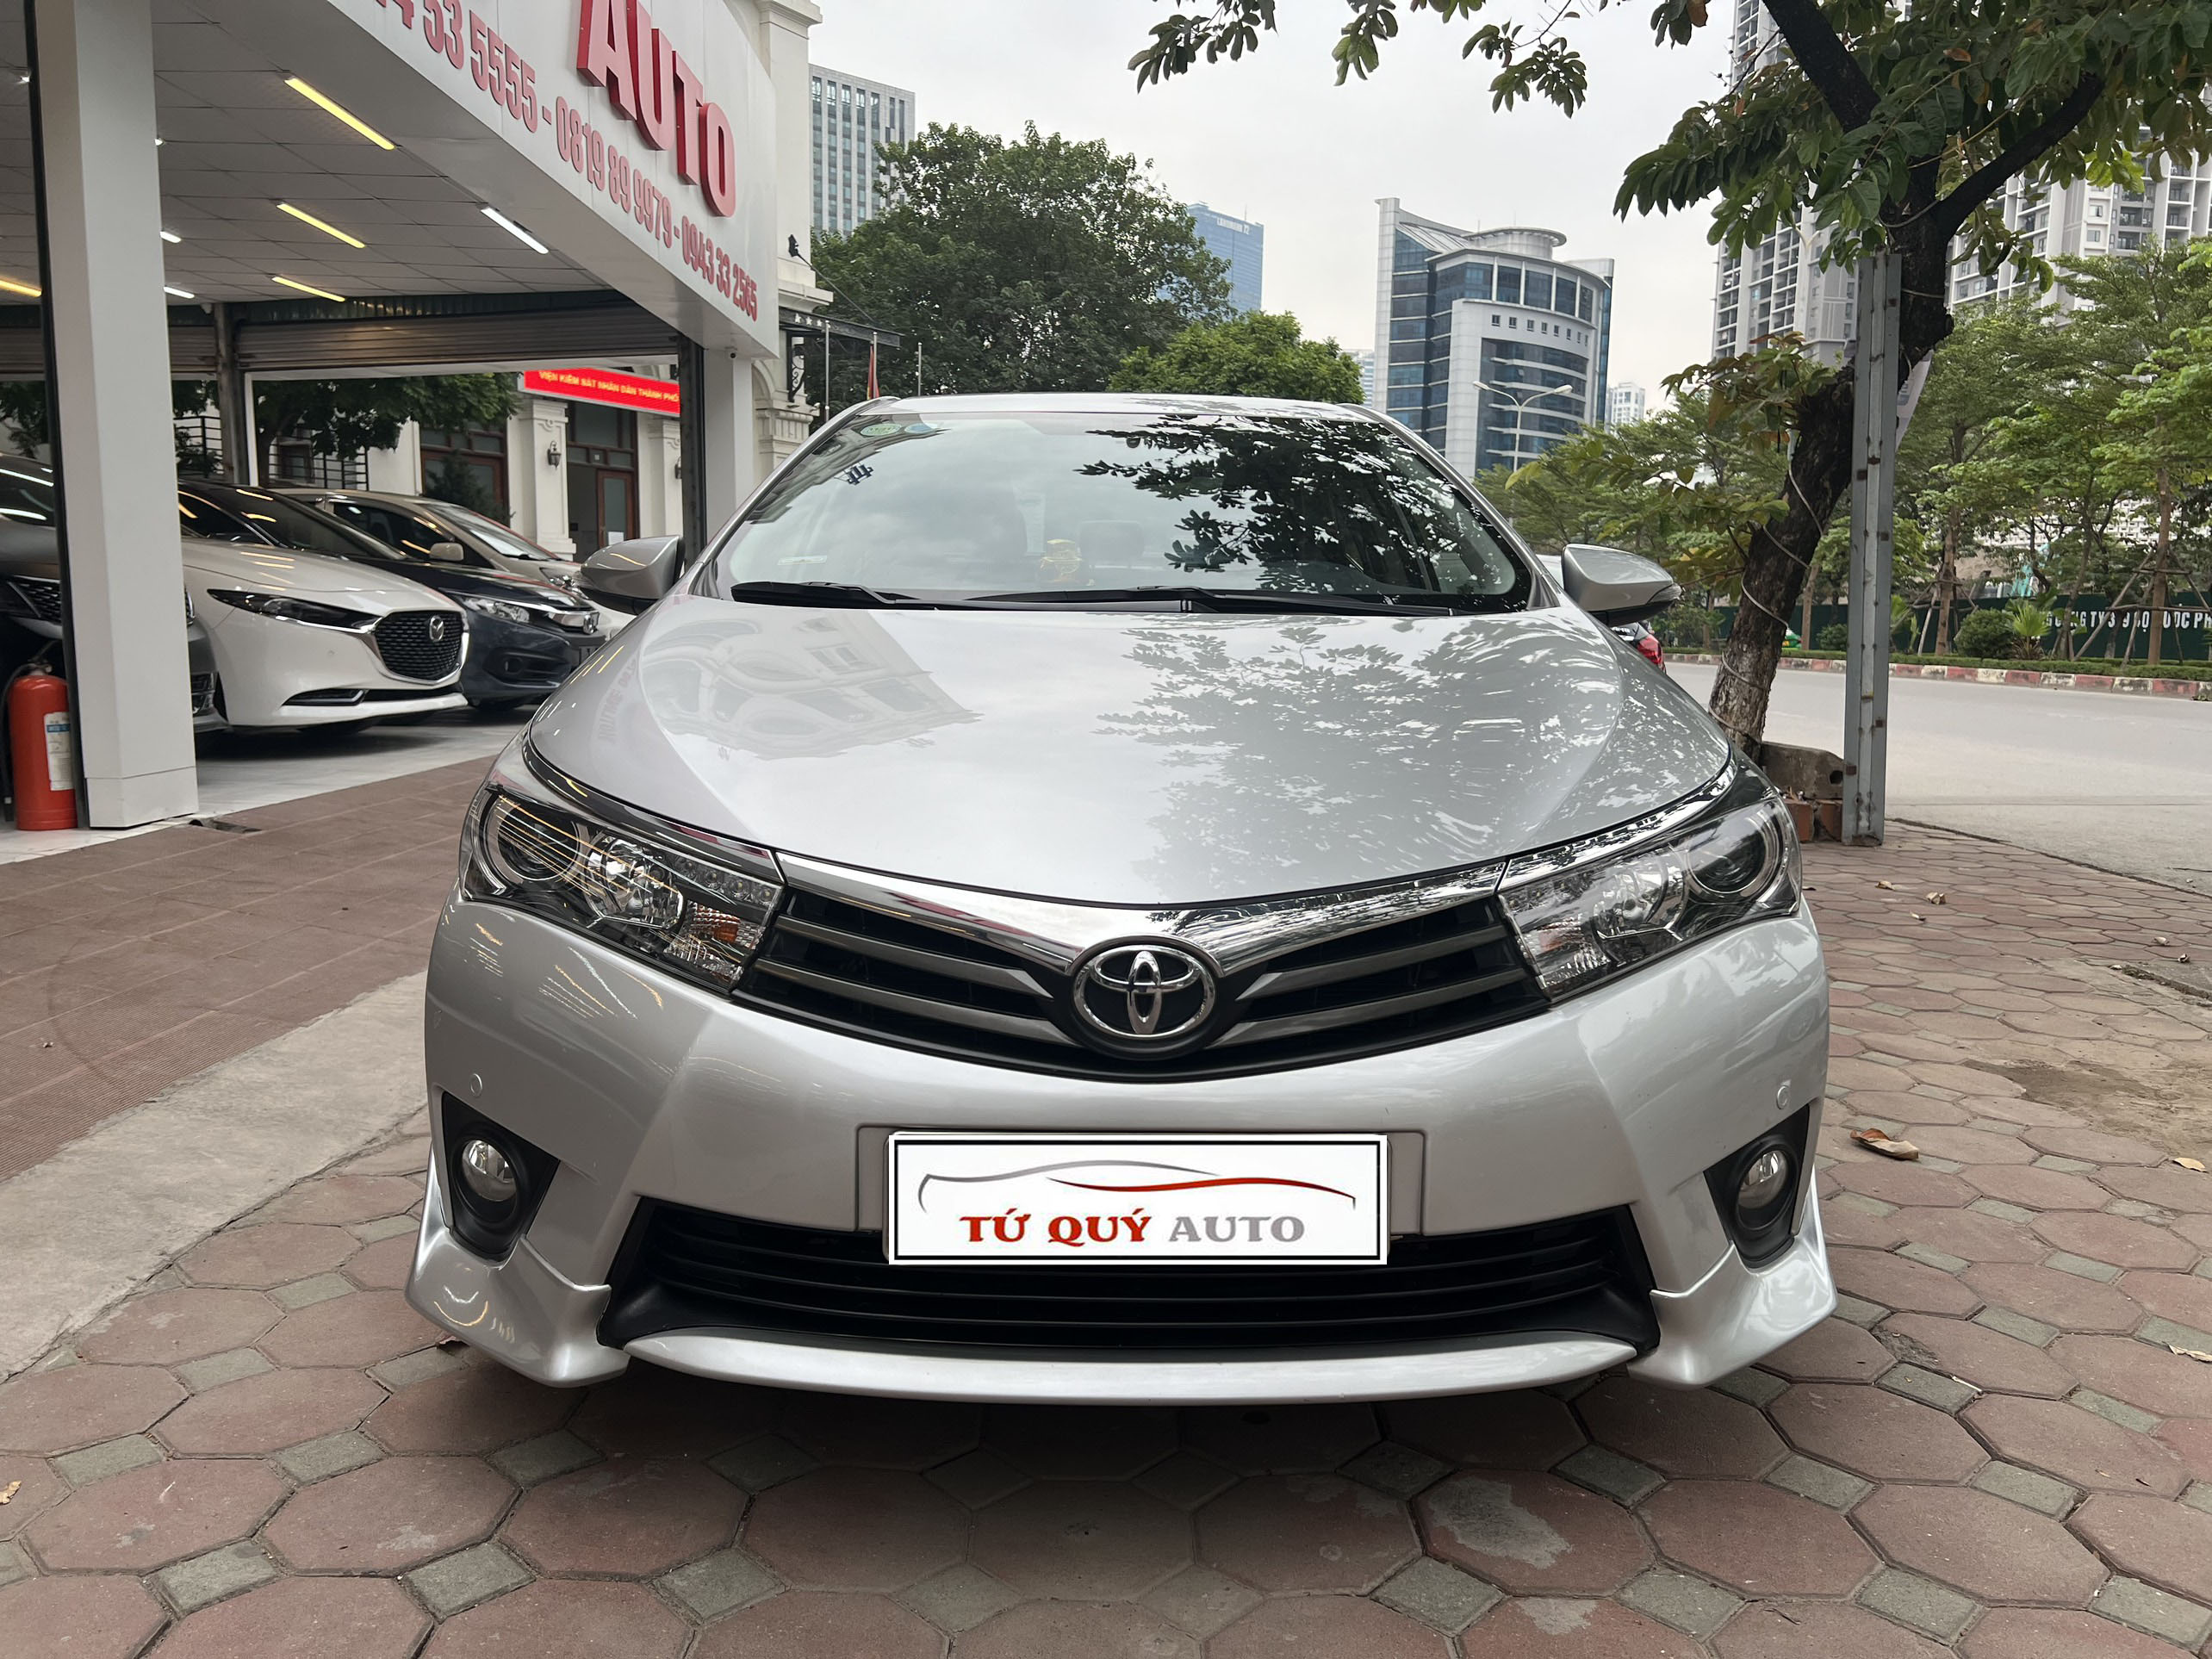 Toyota Corolla Altis 2014 cũ thông số giá bán trả góp